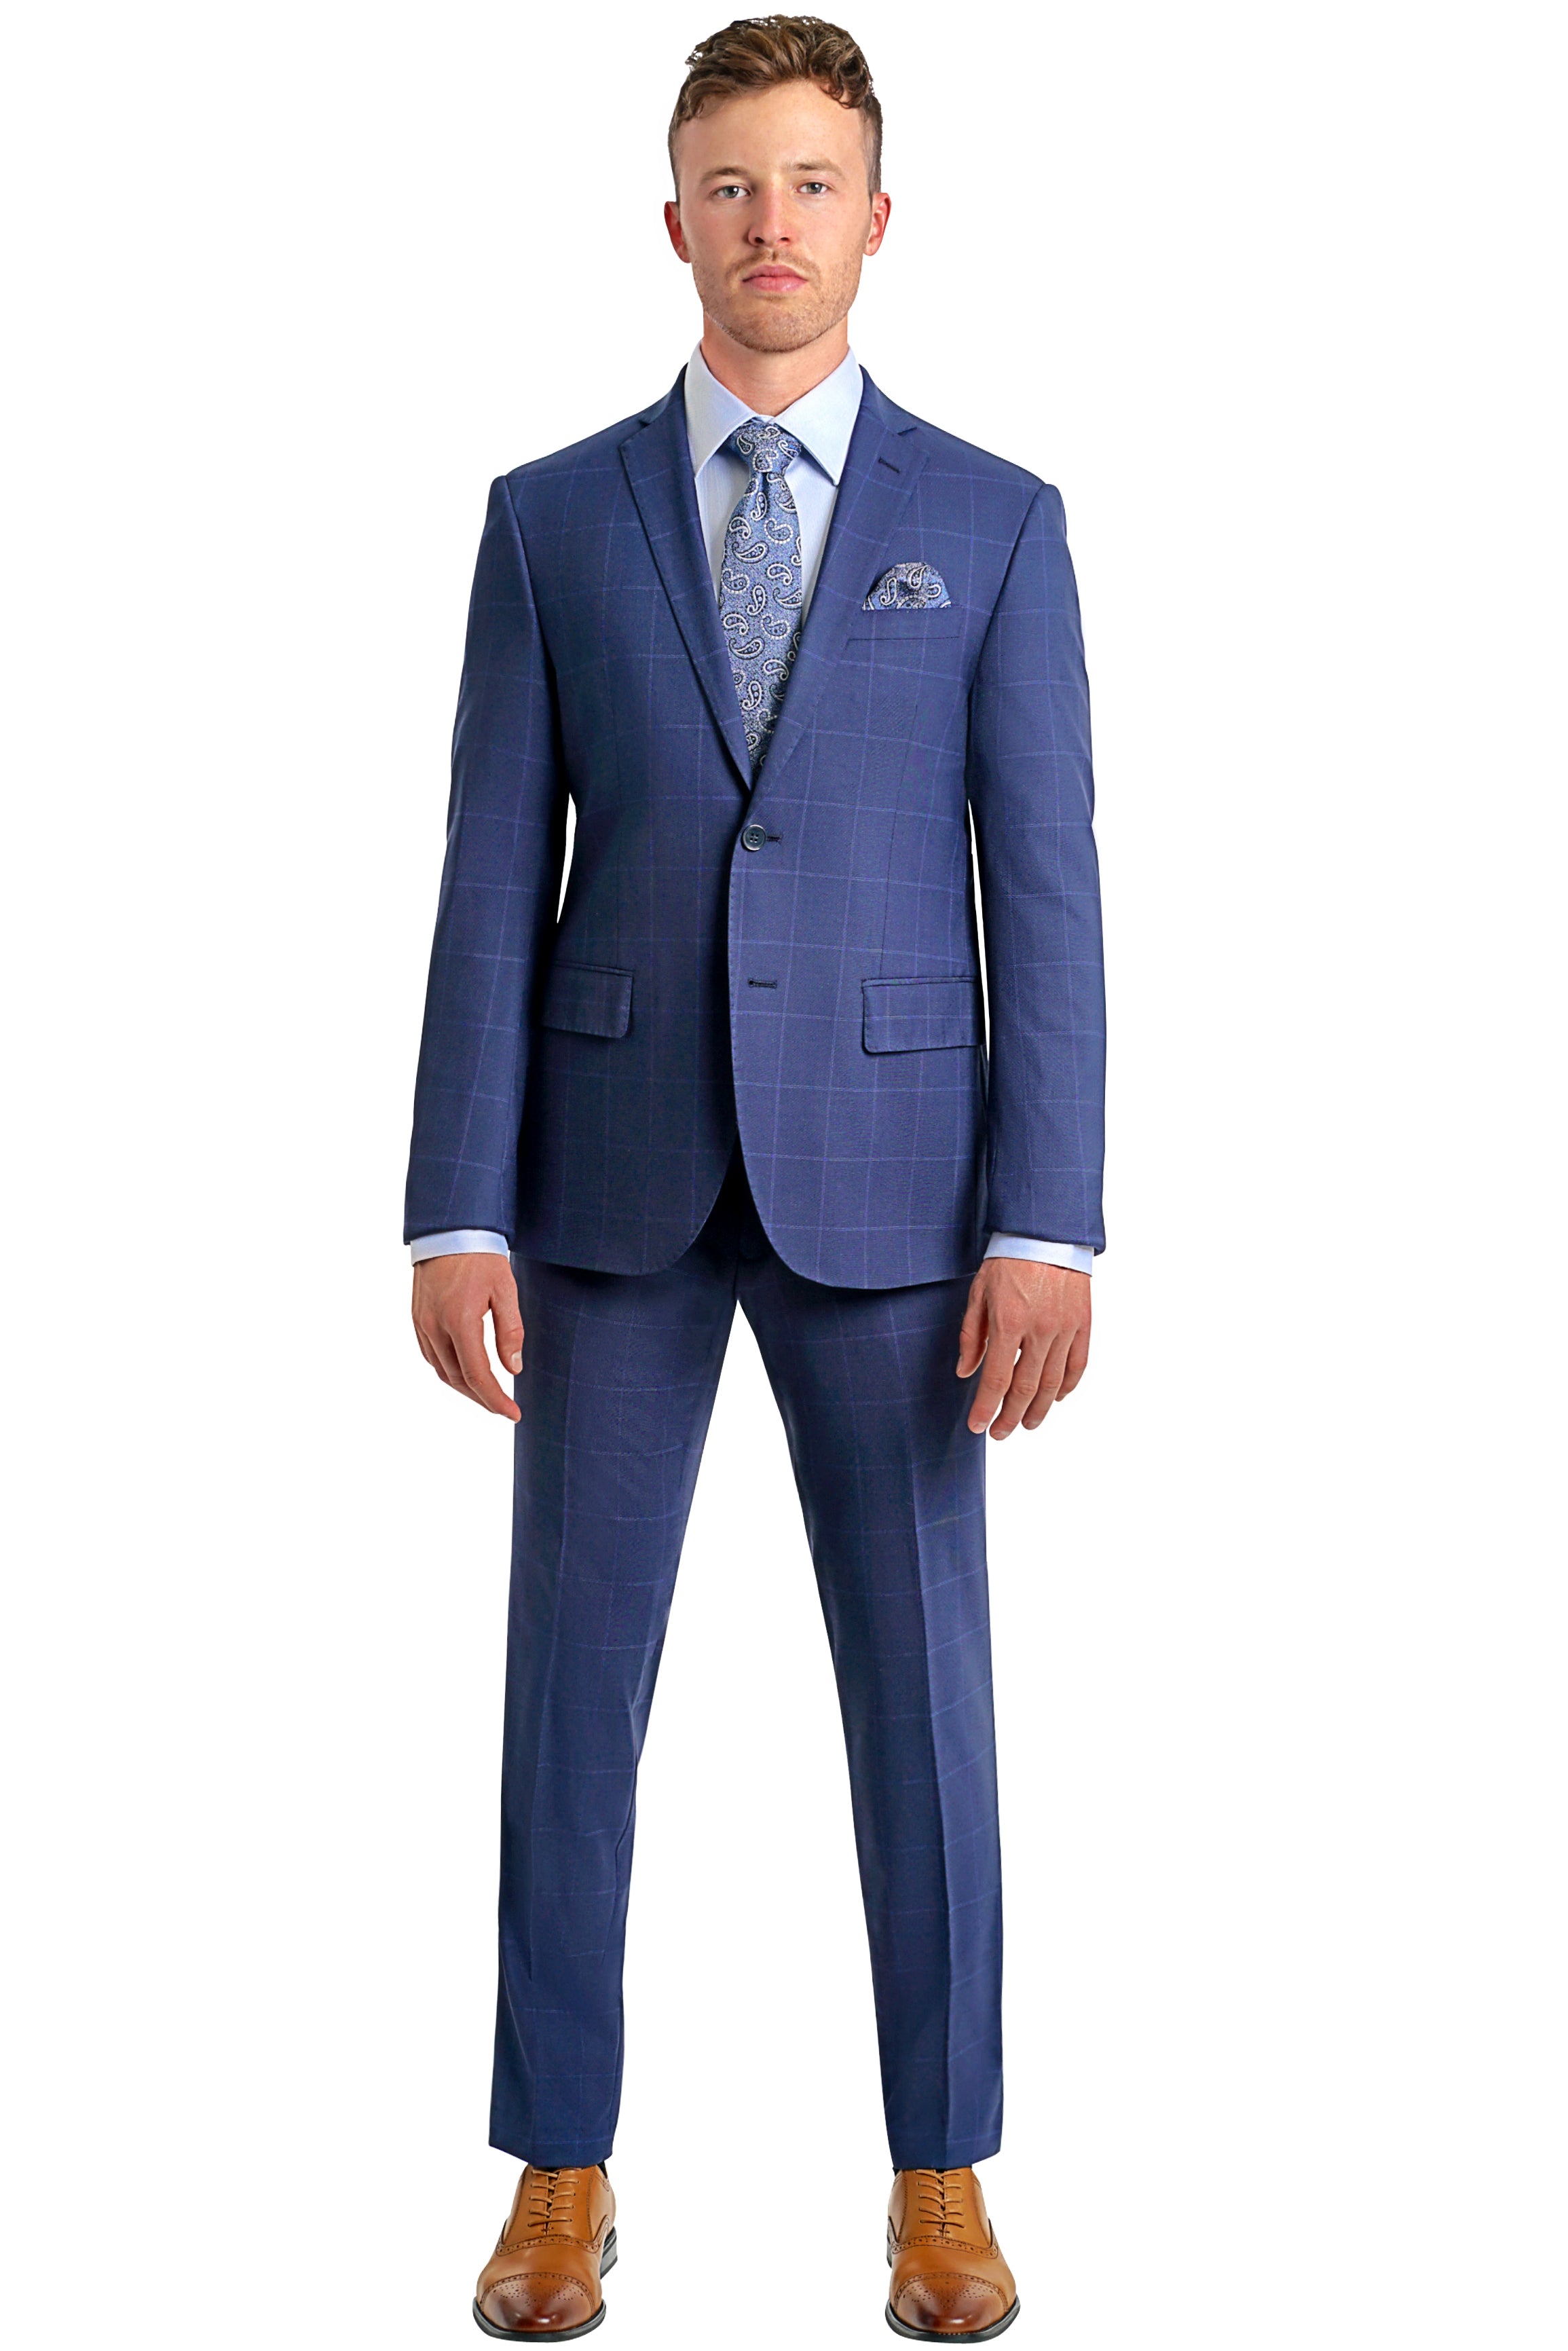 Lazarou Collezioni Suit-MF - Mastroianni Fashions